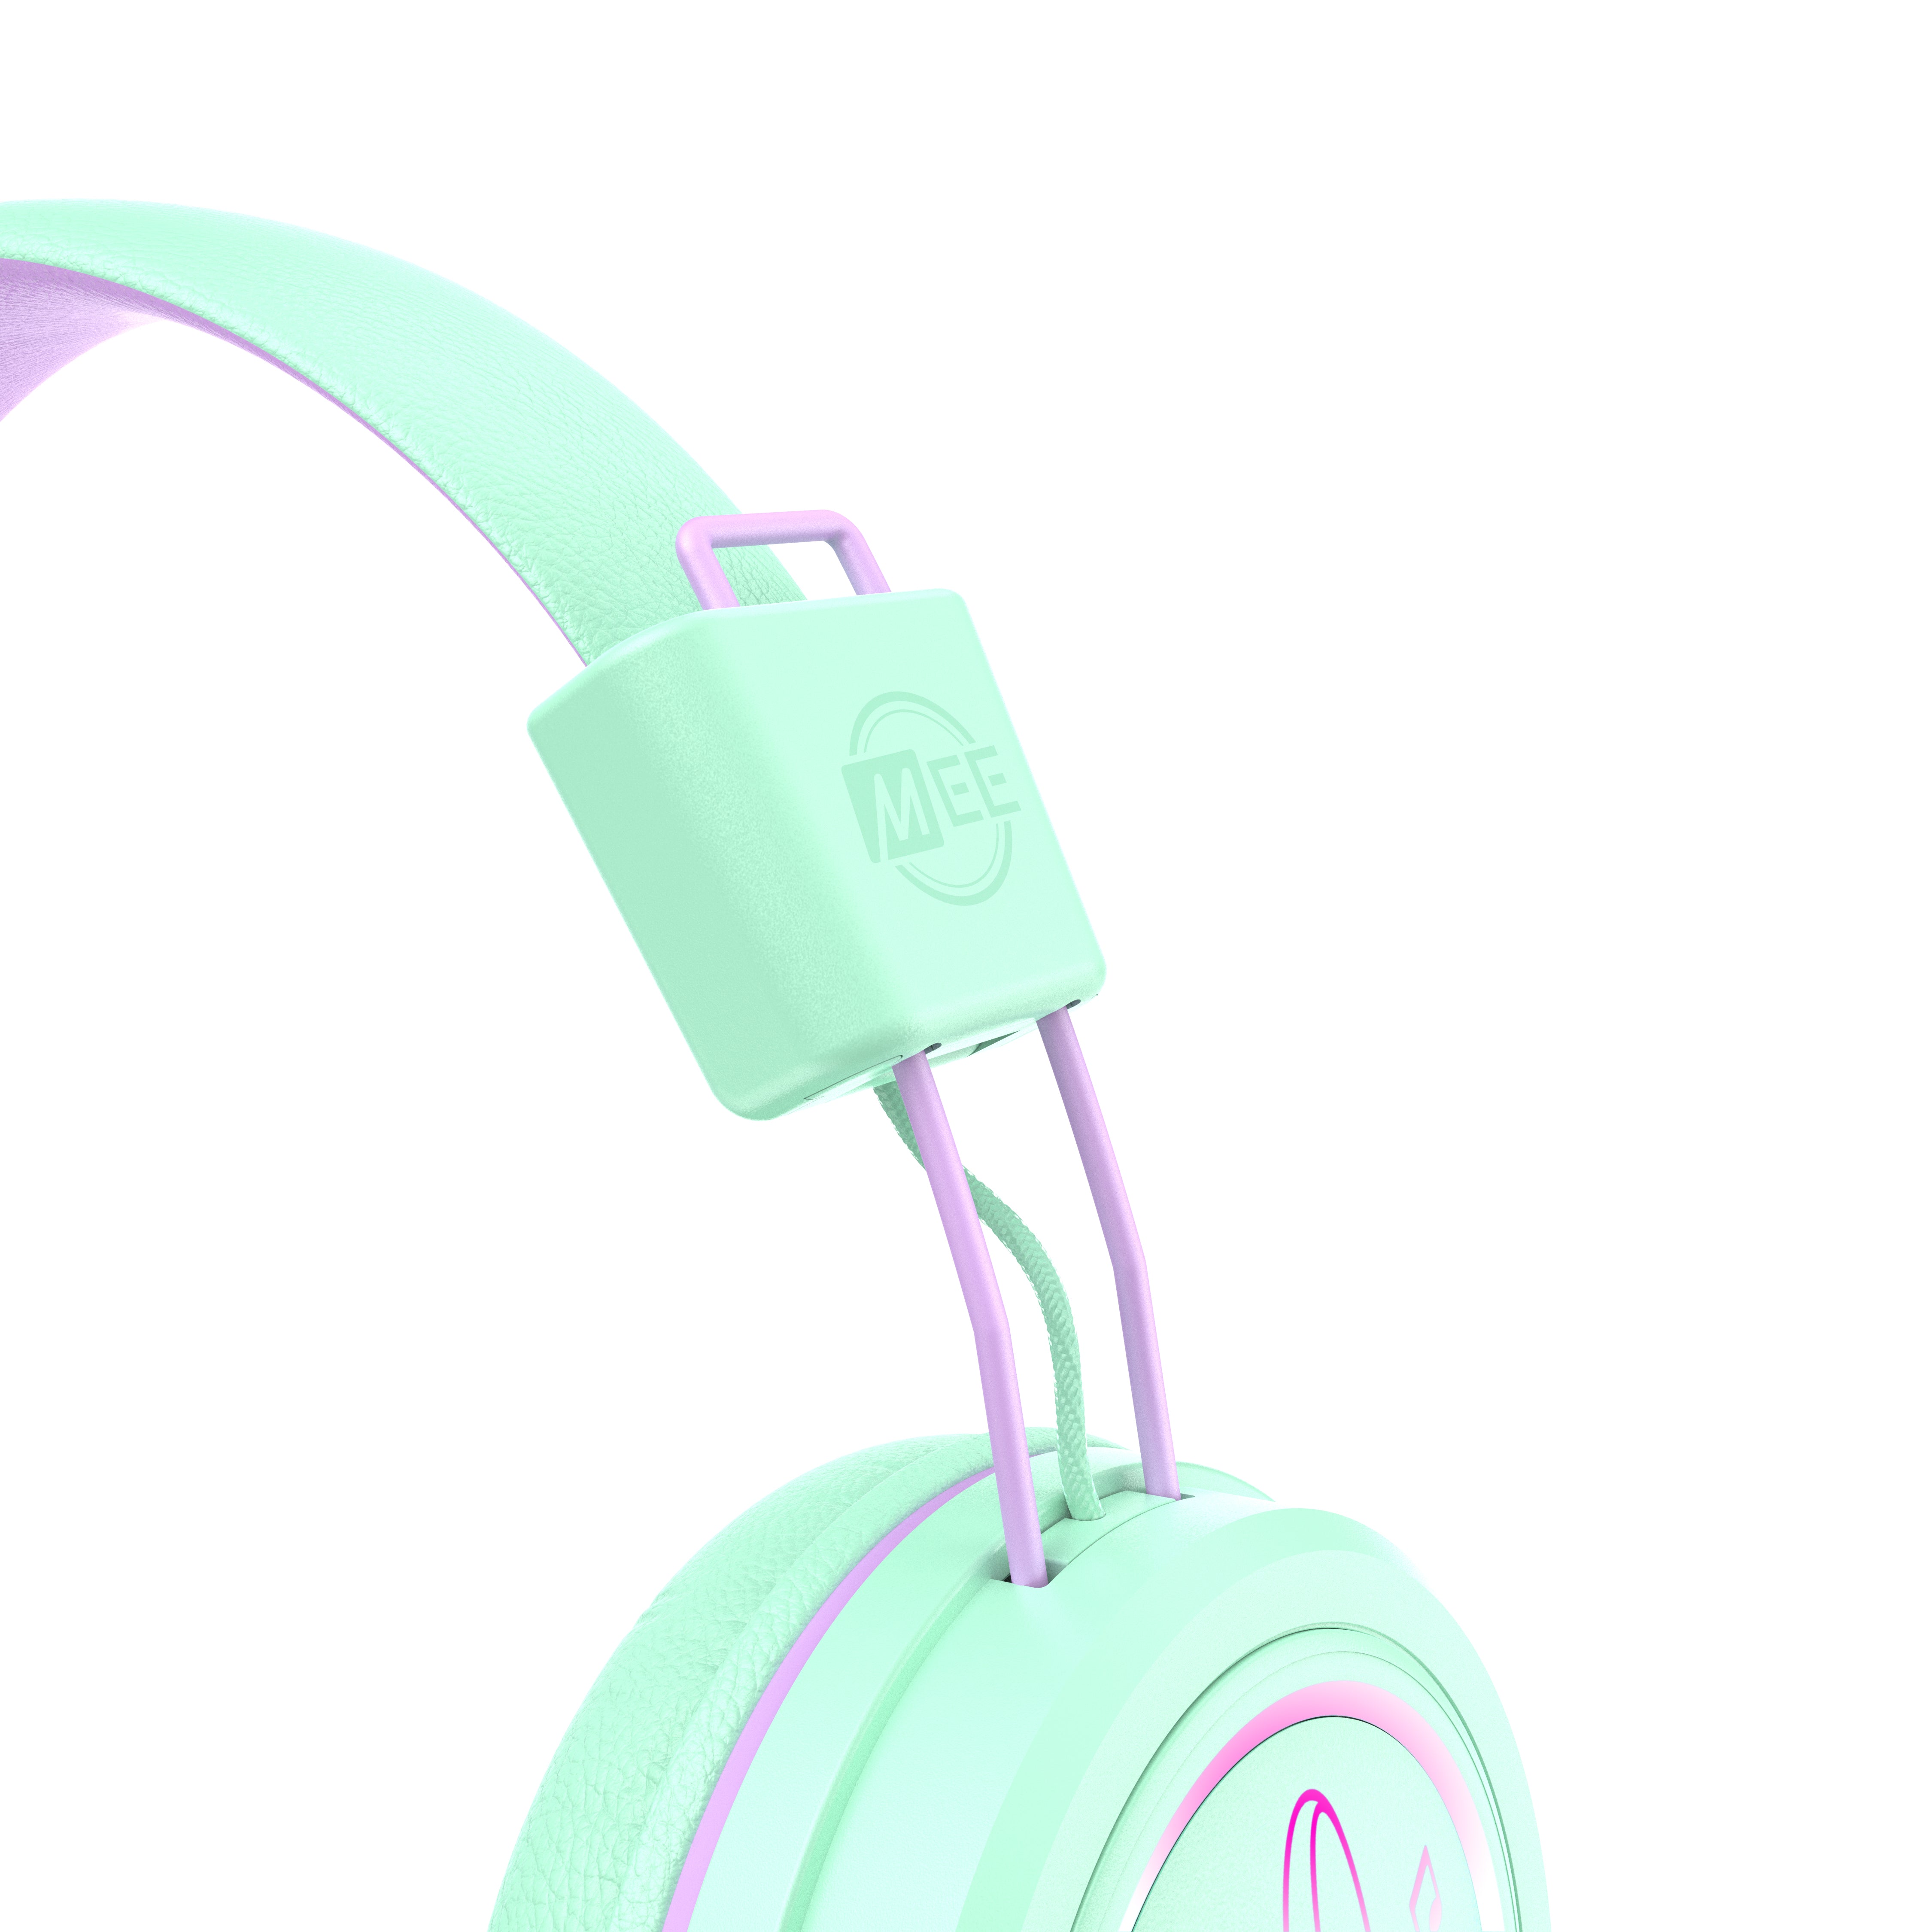 Image of KidJamz KJ55 Safe Listening USB-C Headphones for Kids with LED Lights.